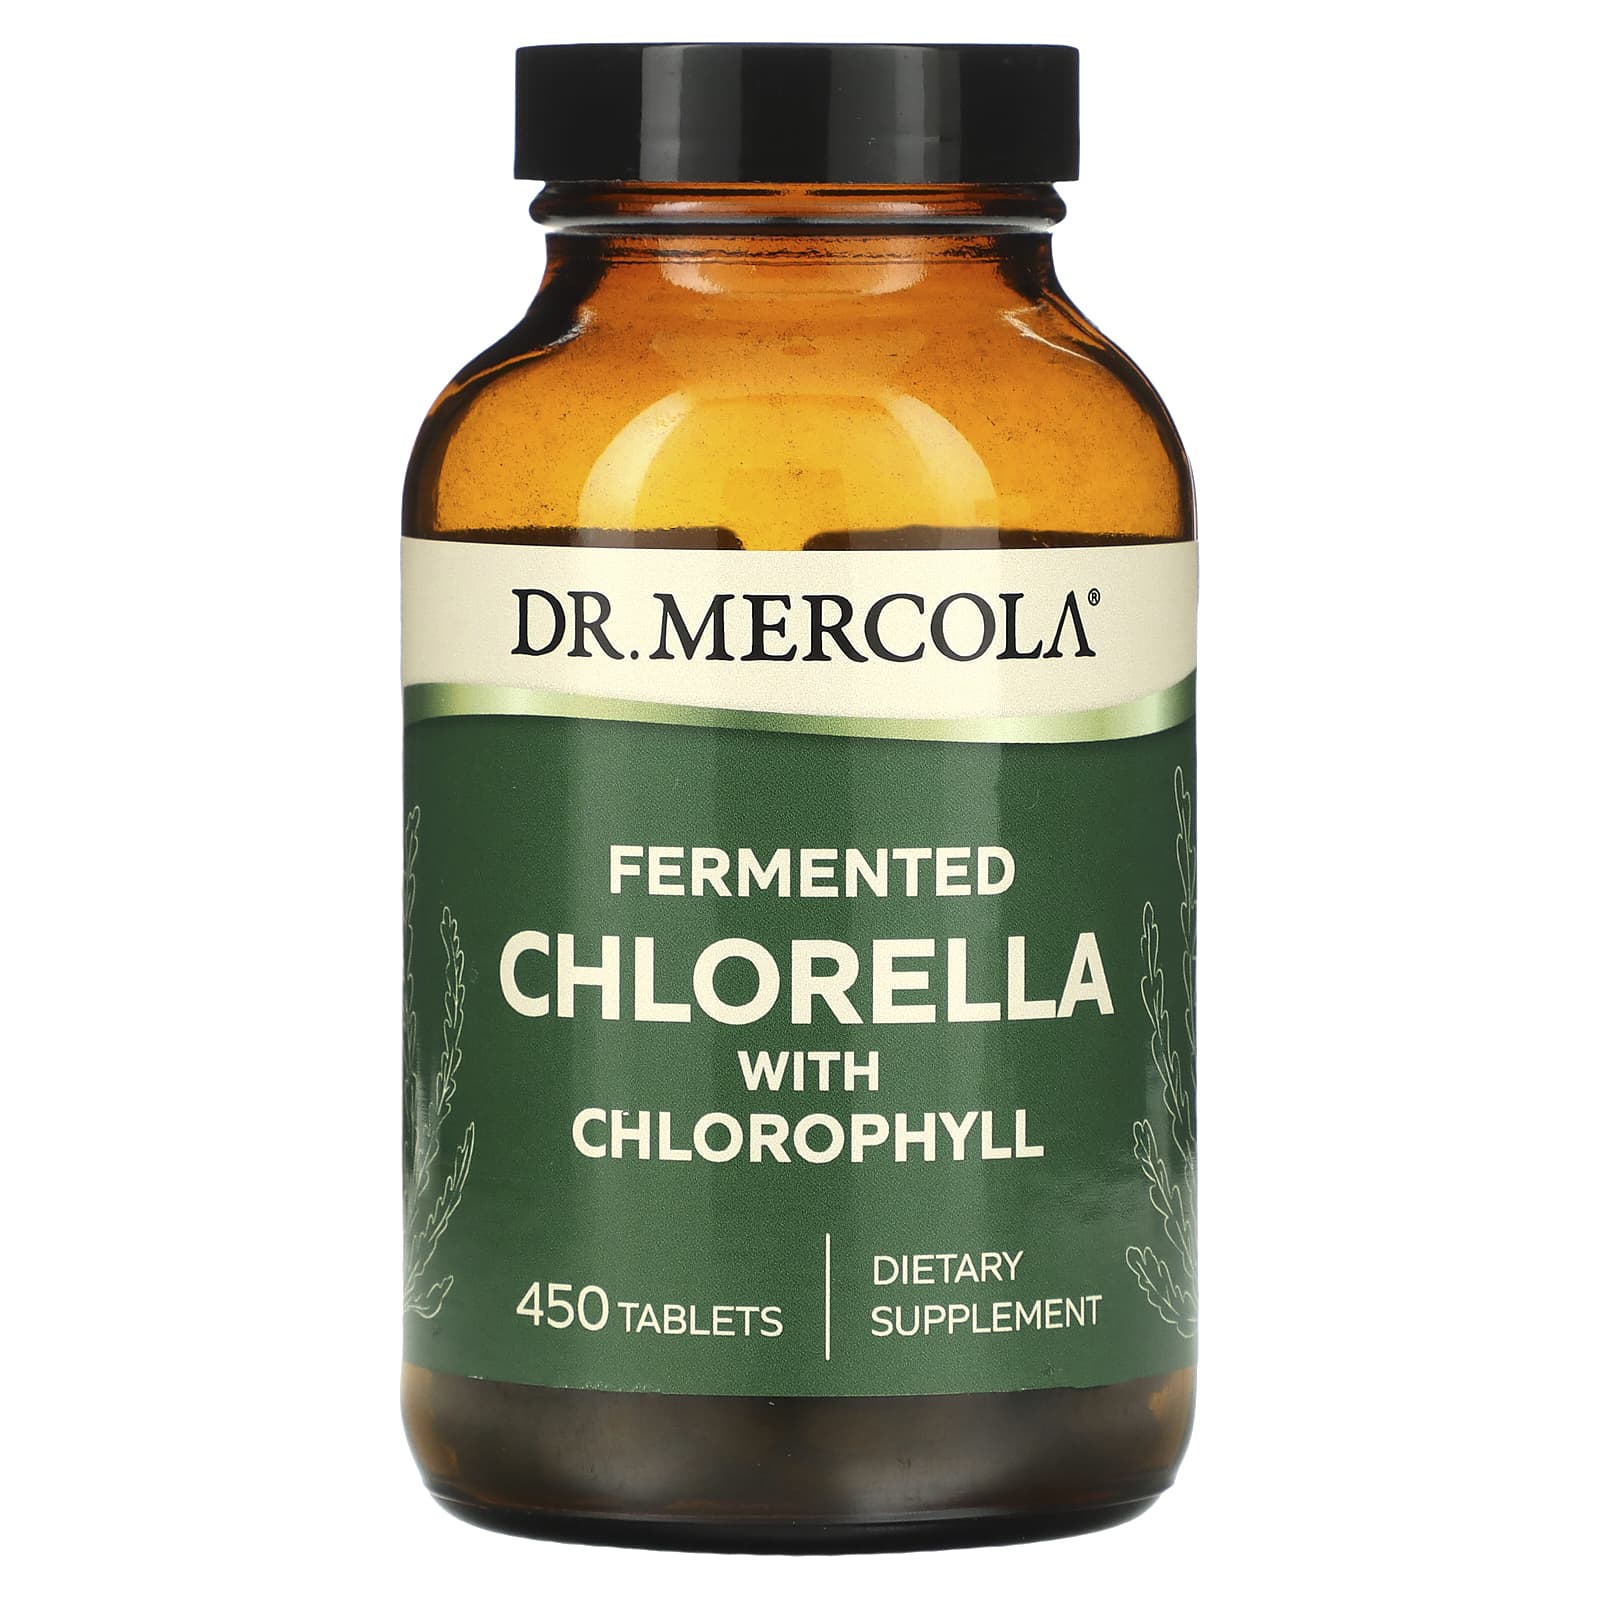 Dr. Mercola ферментированный экстракт хлореллы 450 таблеток dr mercola органический экстракт астрагала 60 таблеток